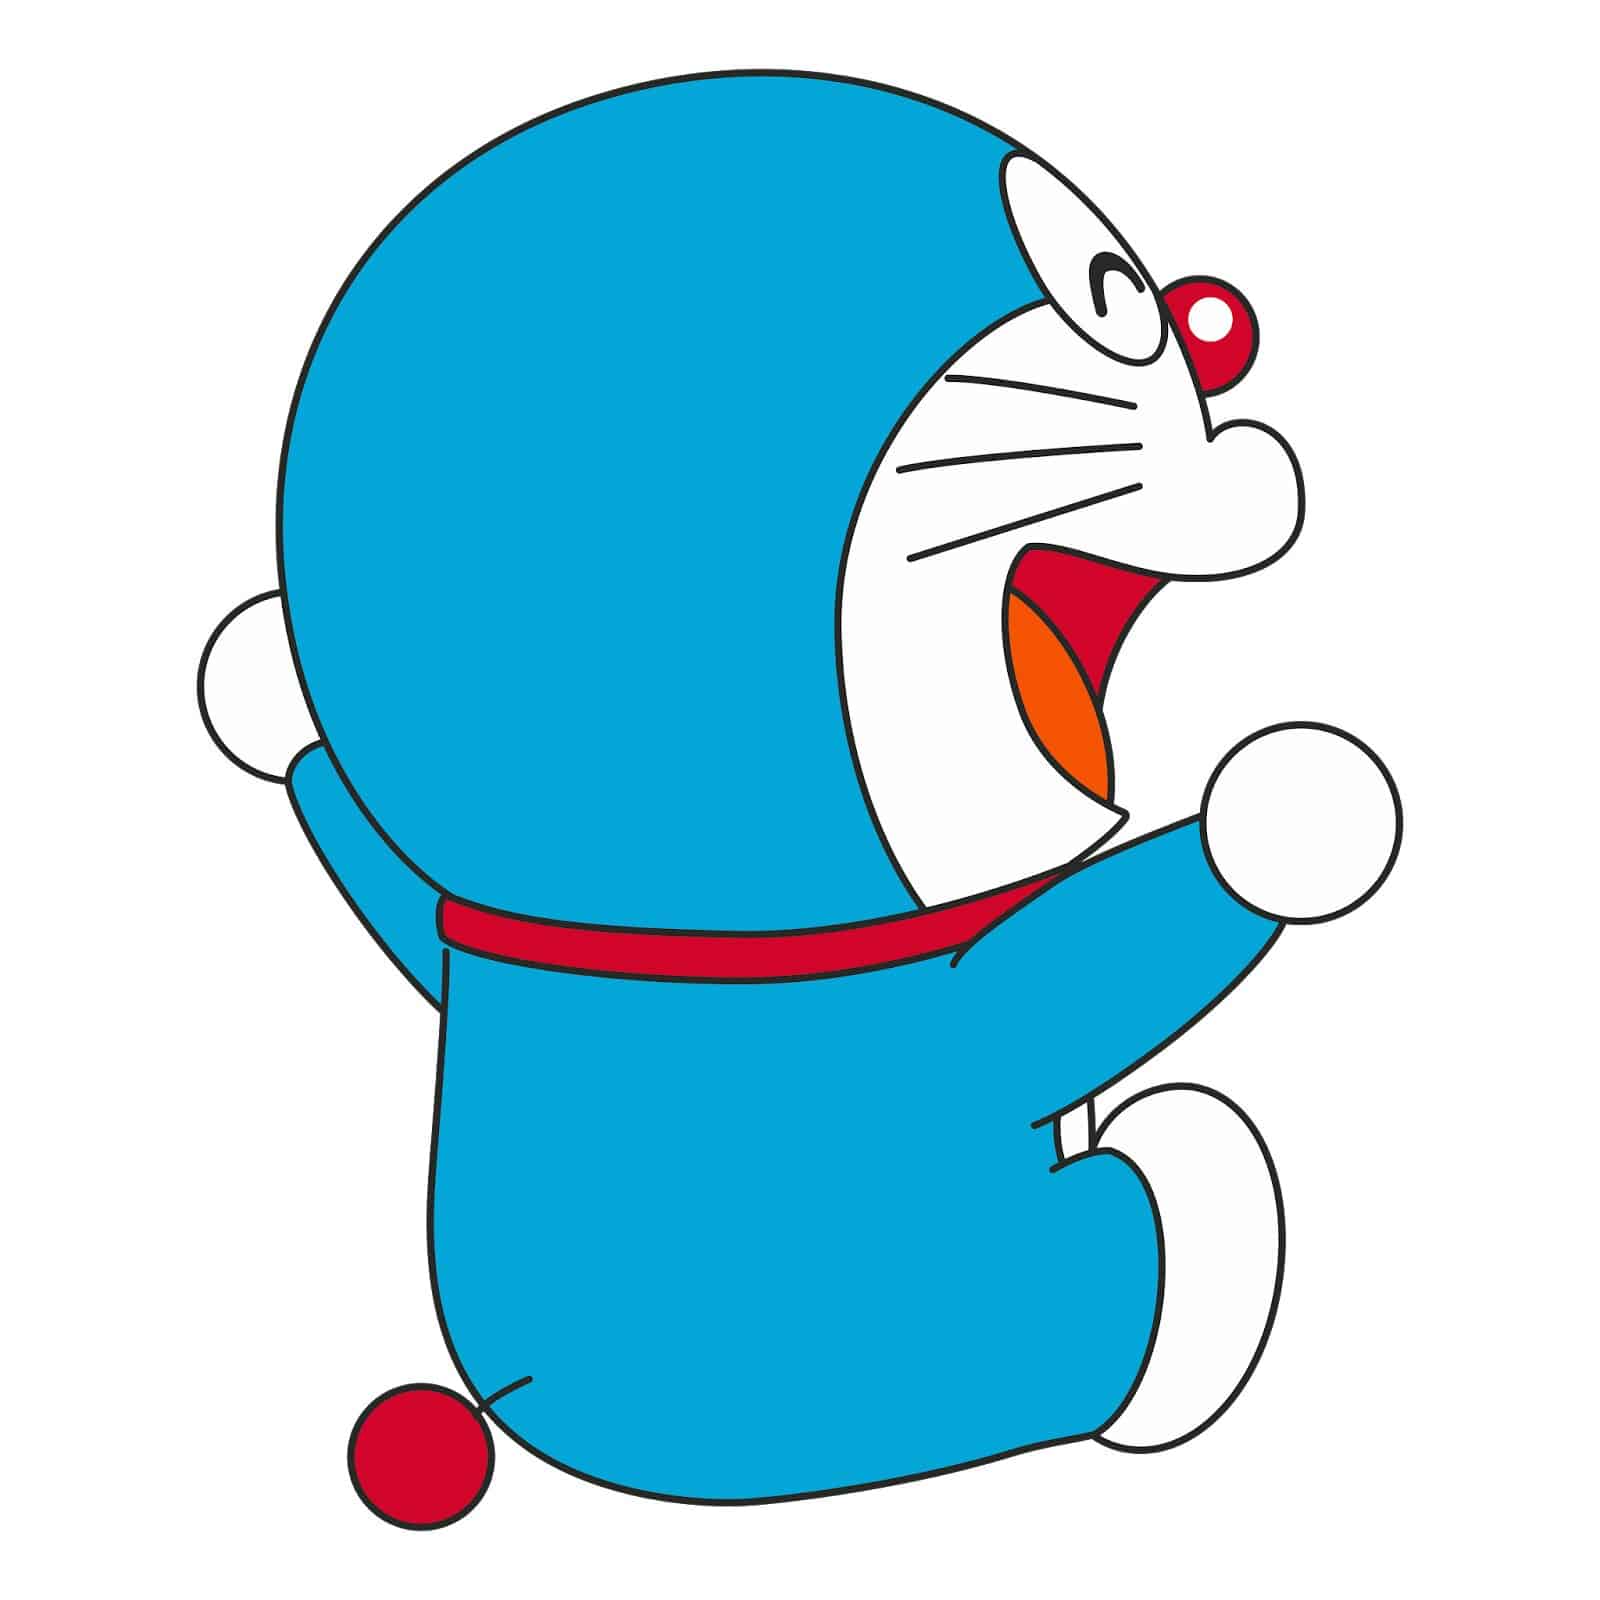 Kumpulan Gambar Doraemon dan 5 Fakta yang Wajib Kamu Ketahui